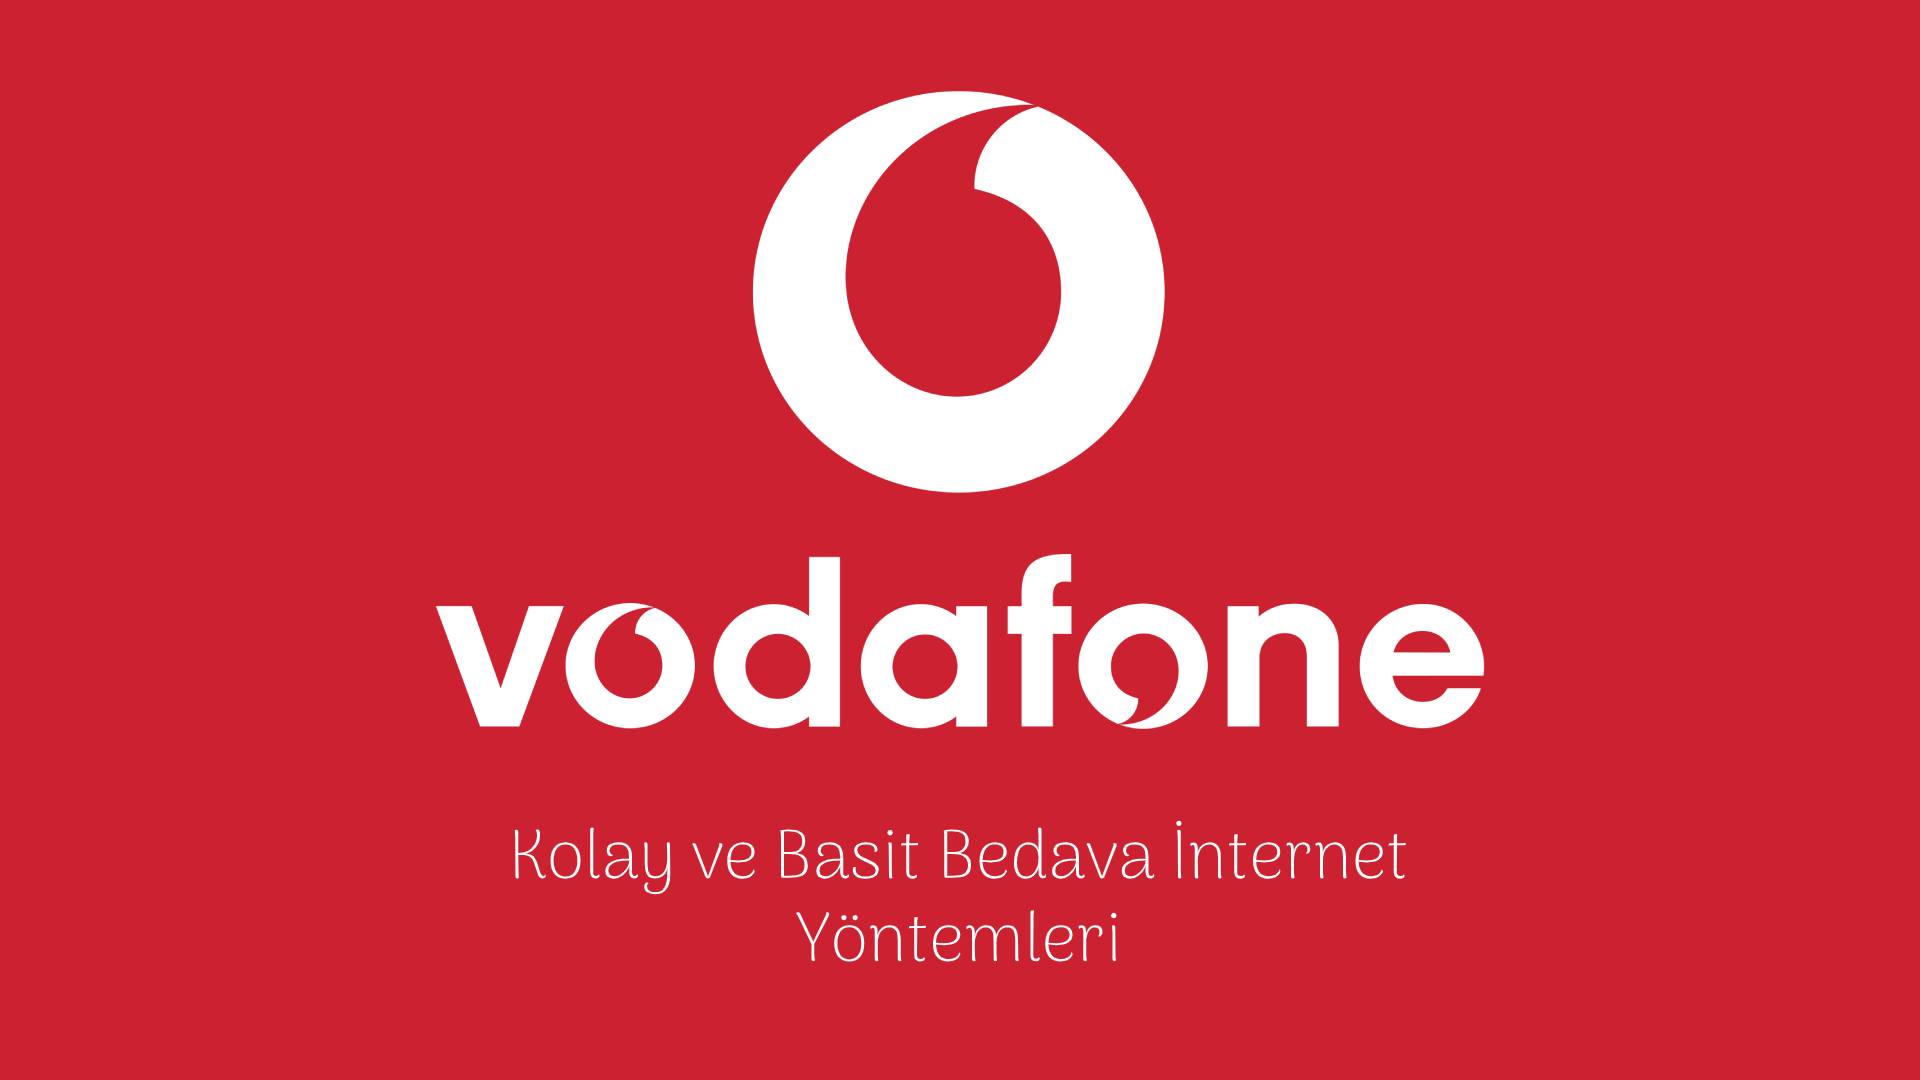 Vodafone Bedava İnternet Yöntemleri 2020 vodafone hediye internet bedava internet 